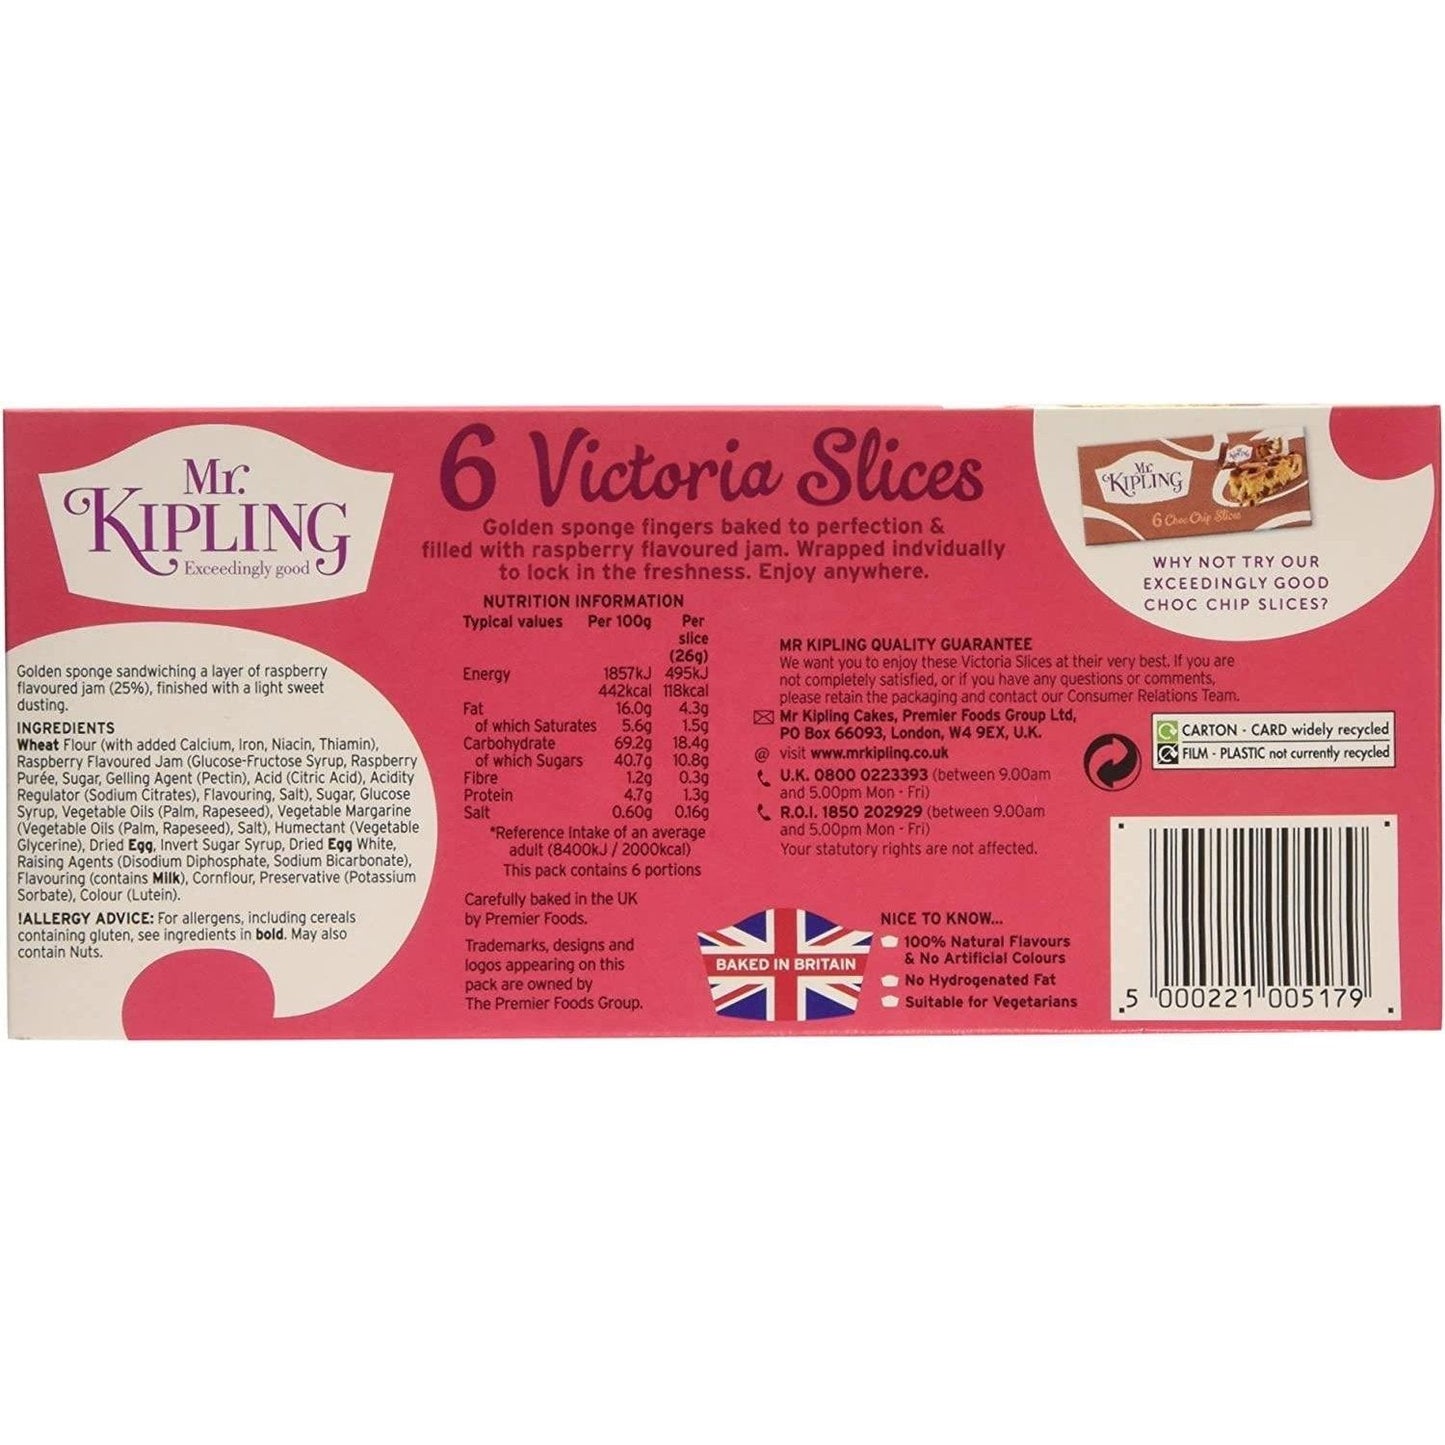 Mr Kipling Victoria Slices 6 Pack 156g